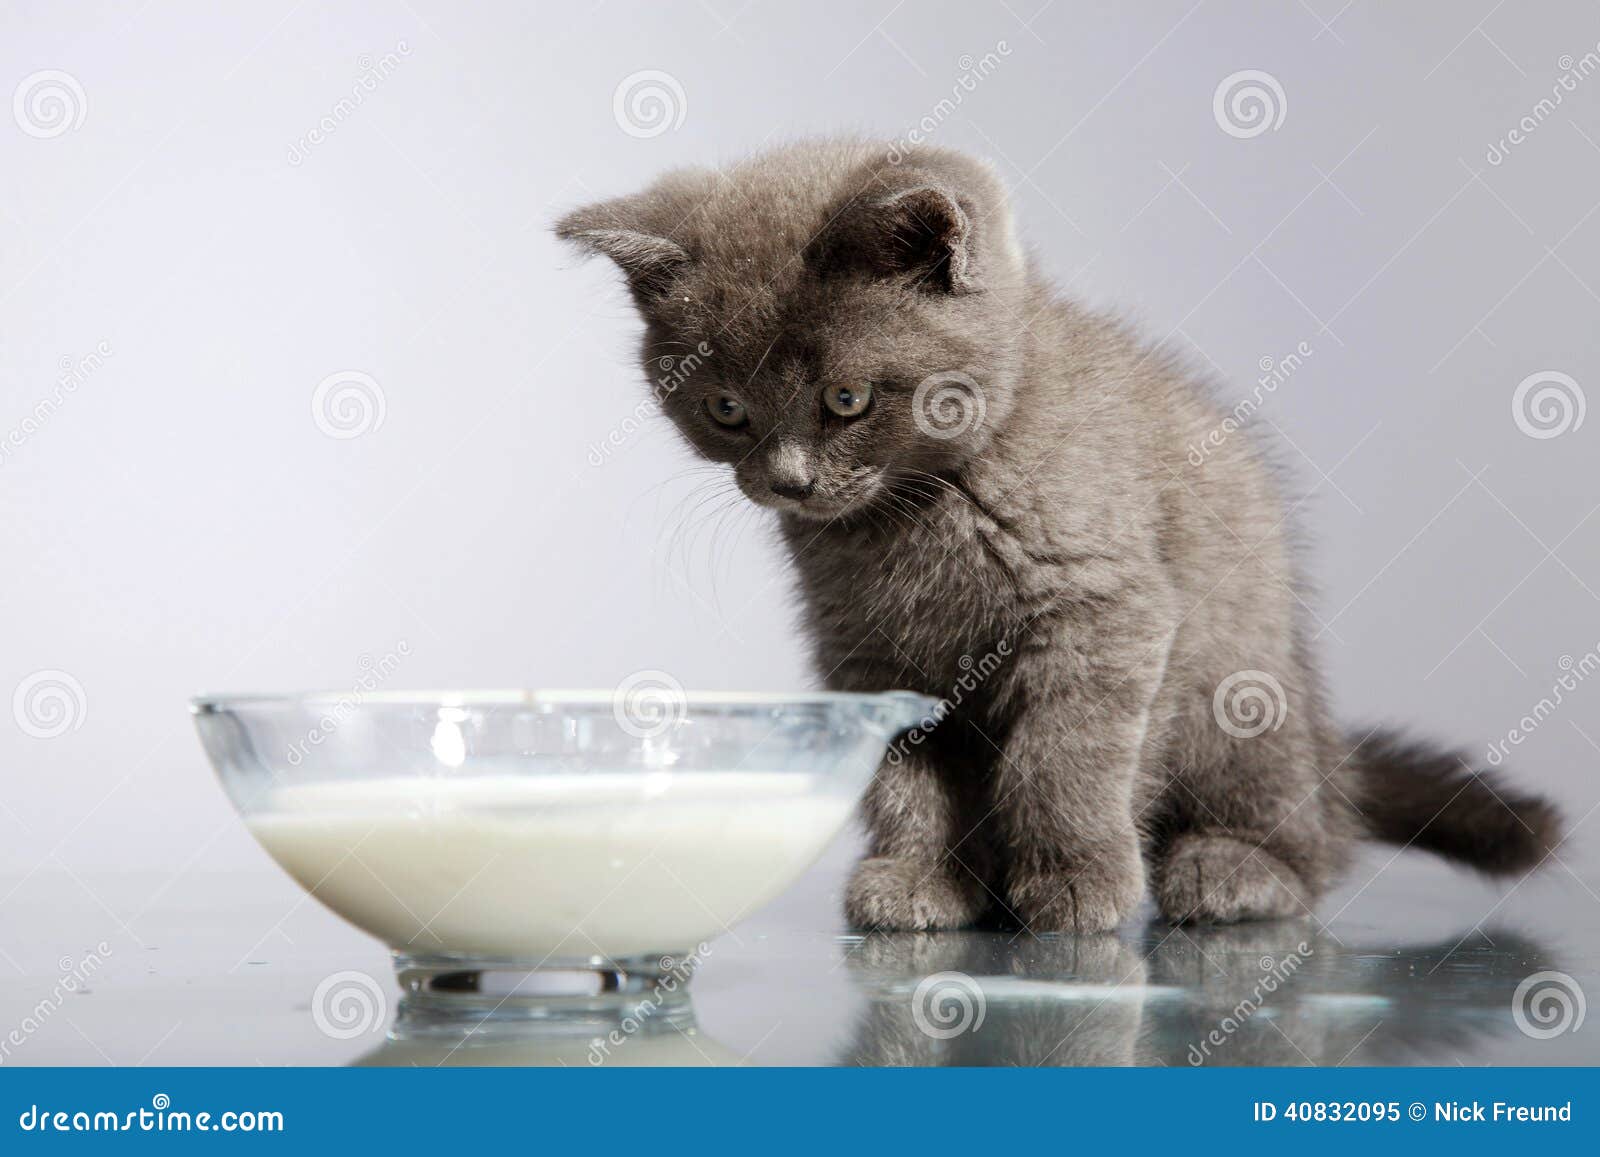 Сколько котята пьют молоко. Деревенский кот пьет молоко. Кошка пьет молоко русская голубая. Серый котенок пьет молоко.